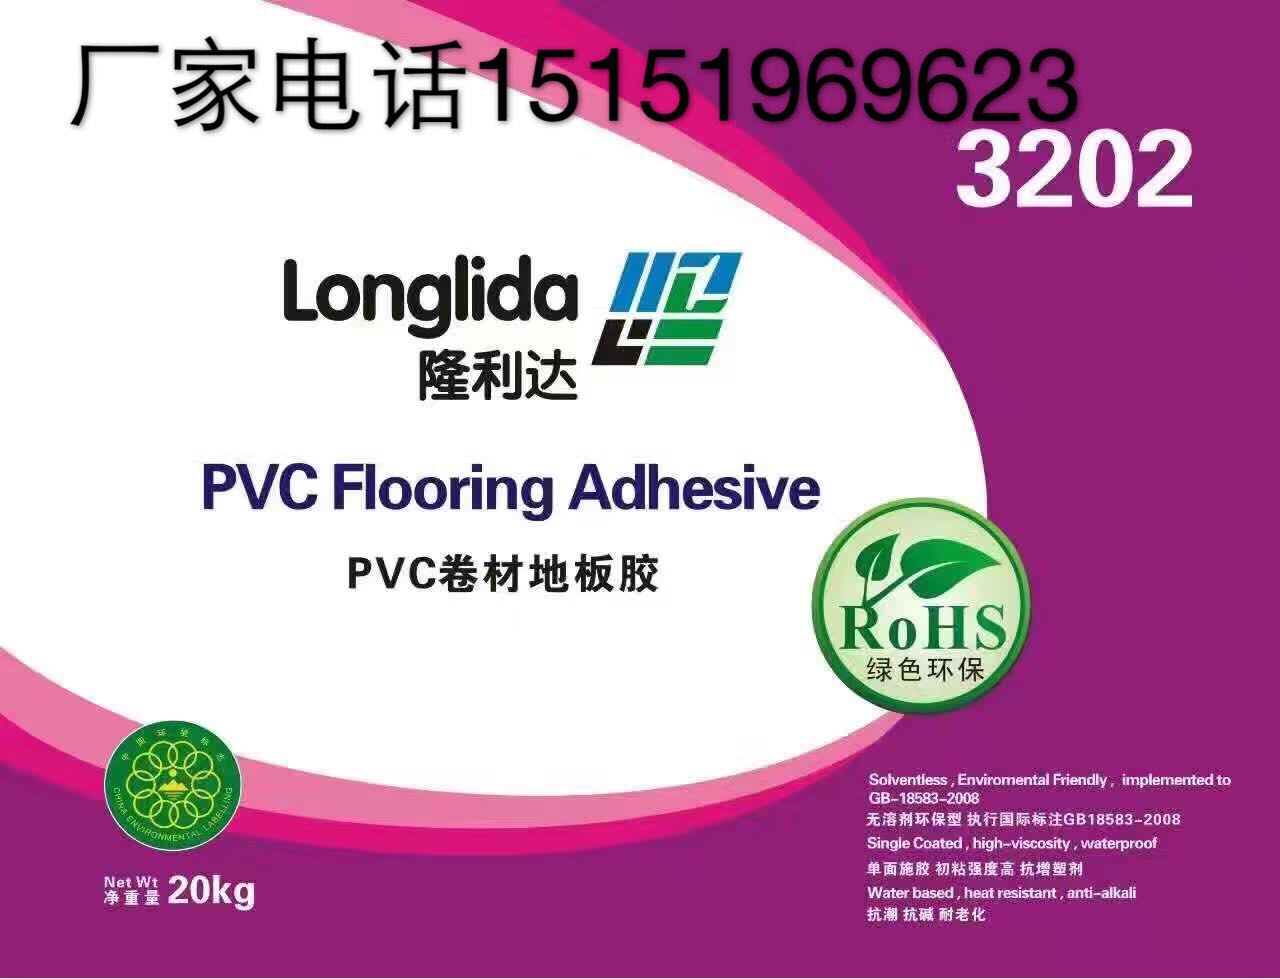 常州市协成胶粘剂有限公司，隆利达3202型号pvc地板上墙胶水。